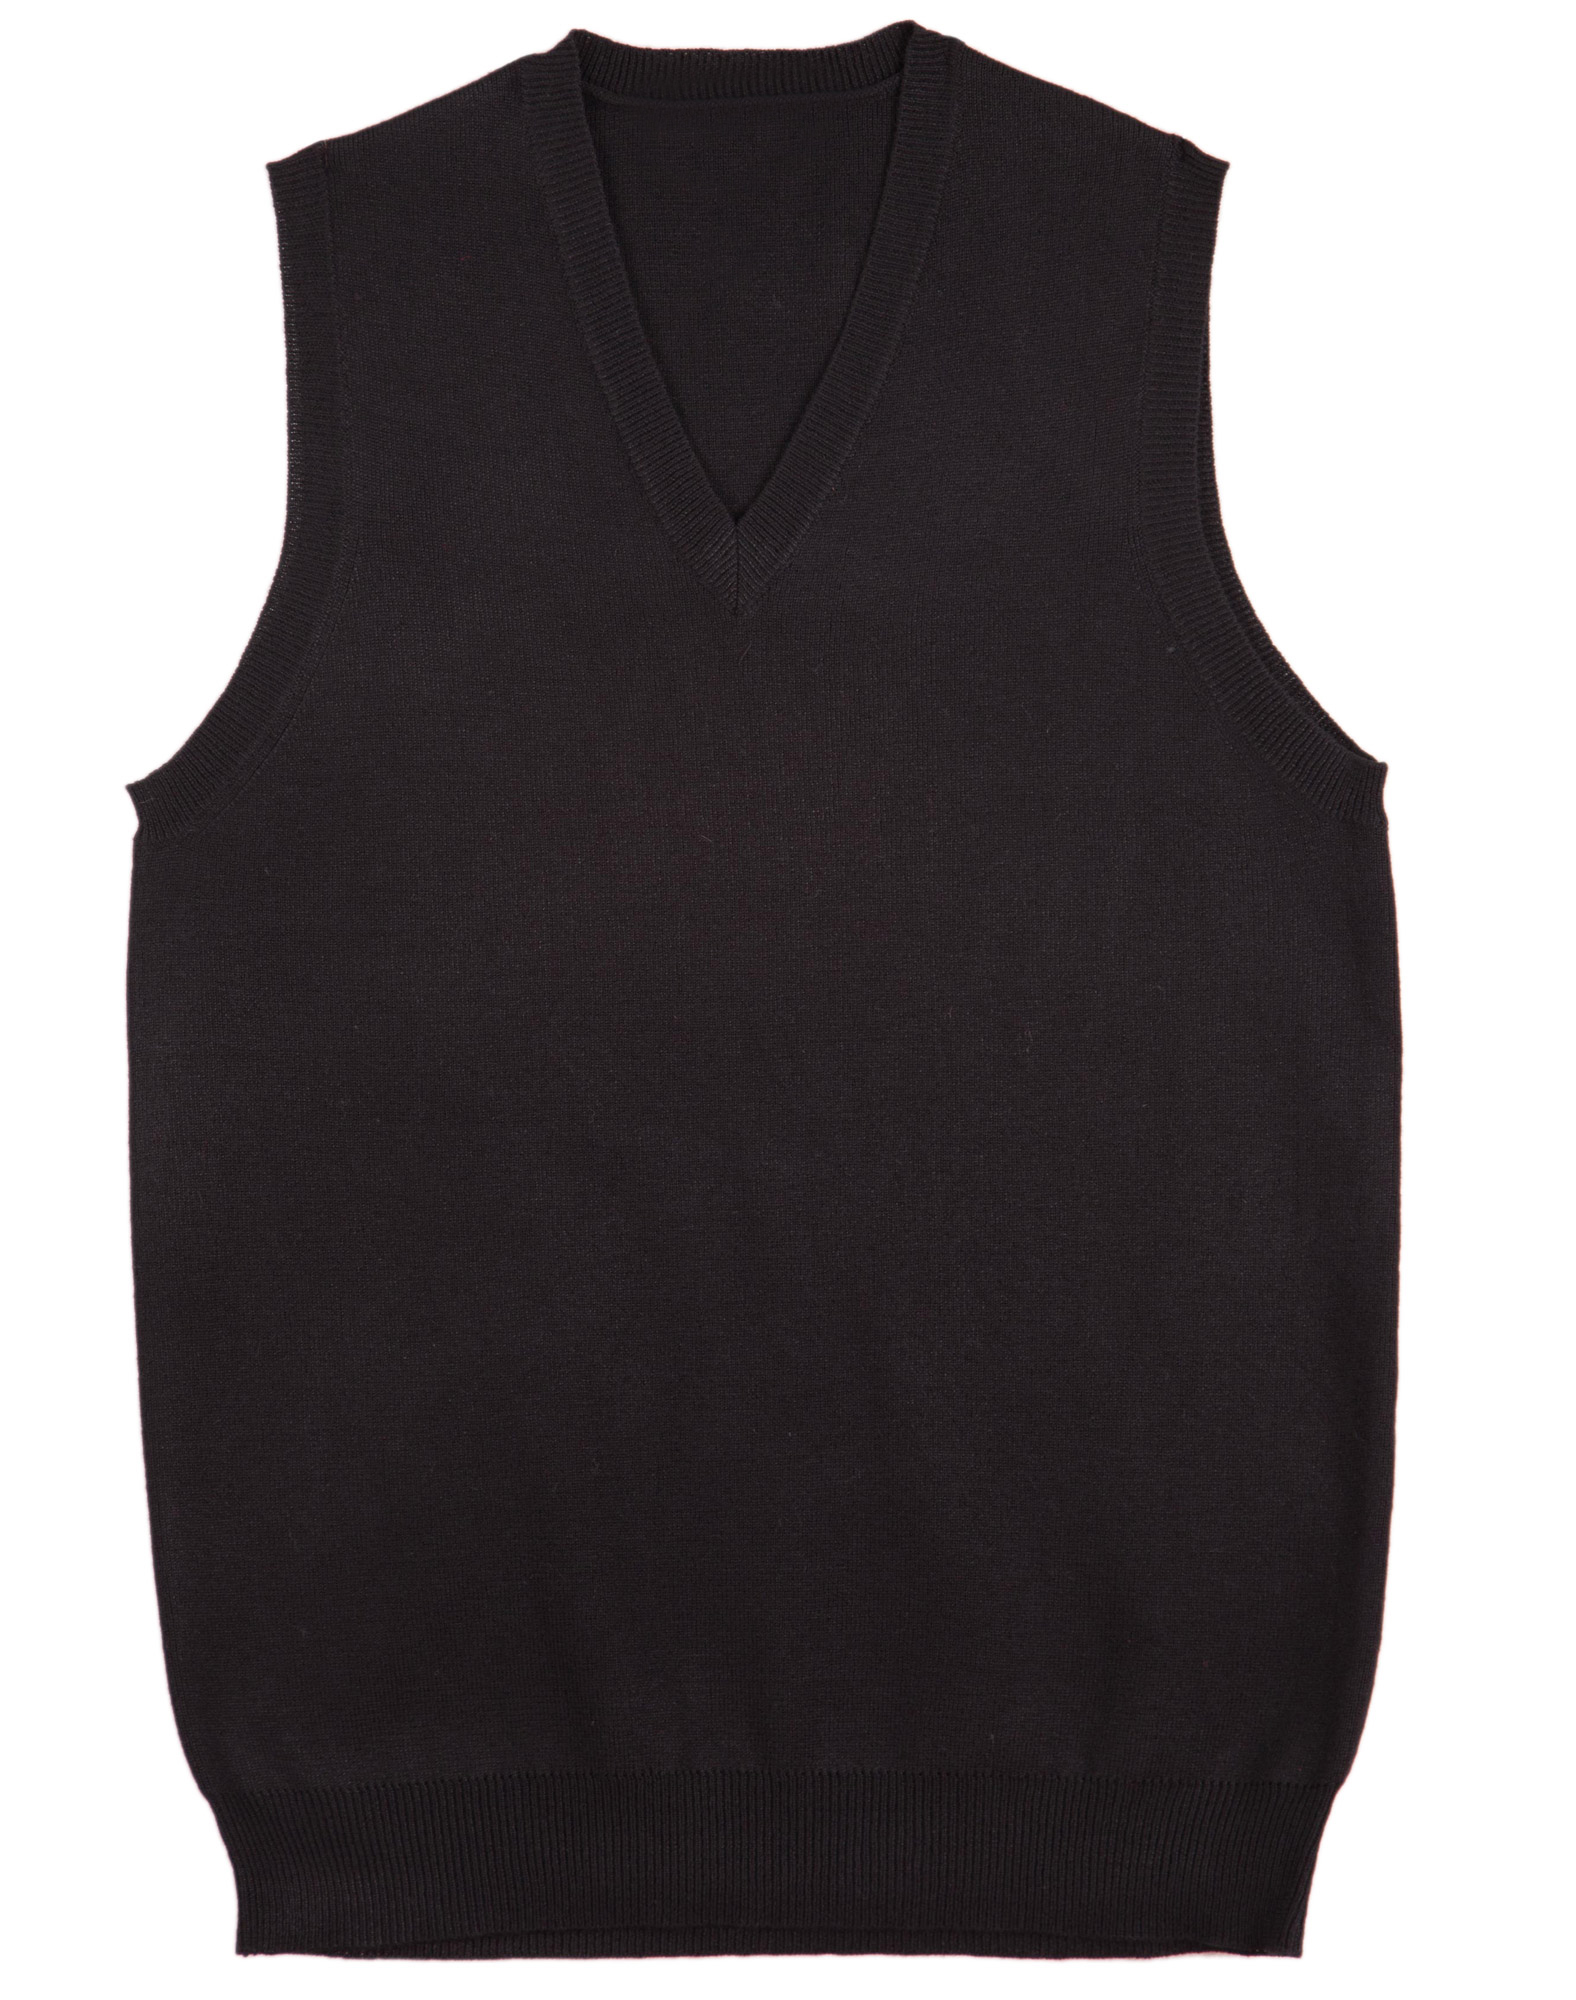 Women's Knitwear Vest - Black - Uniform Edit